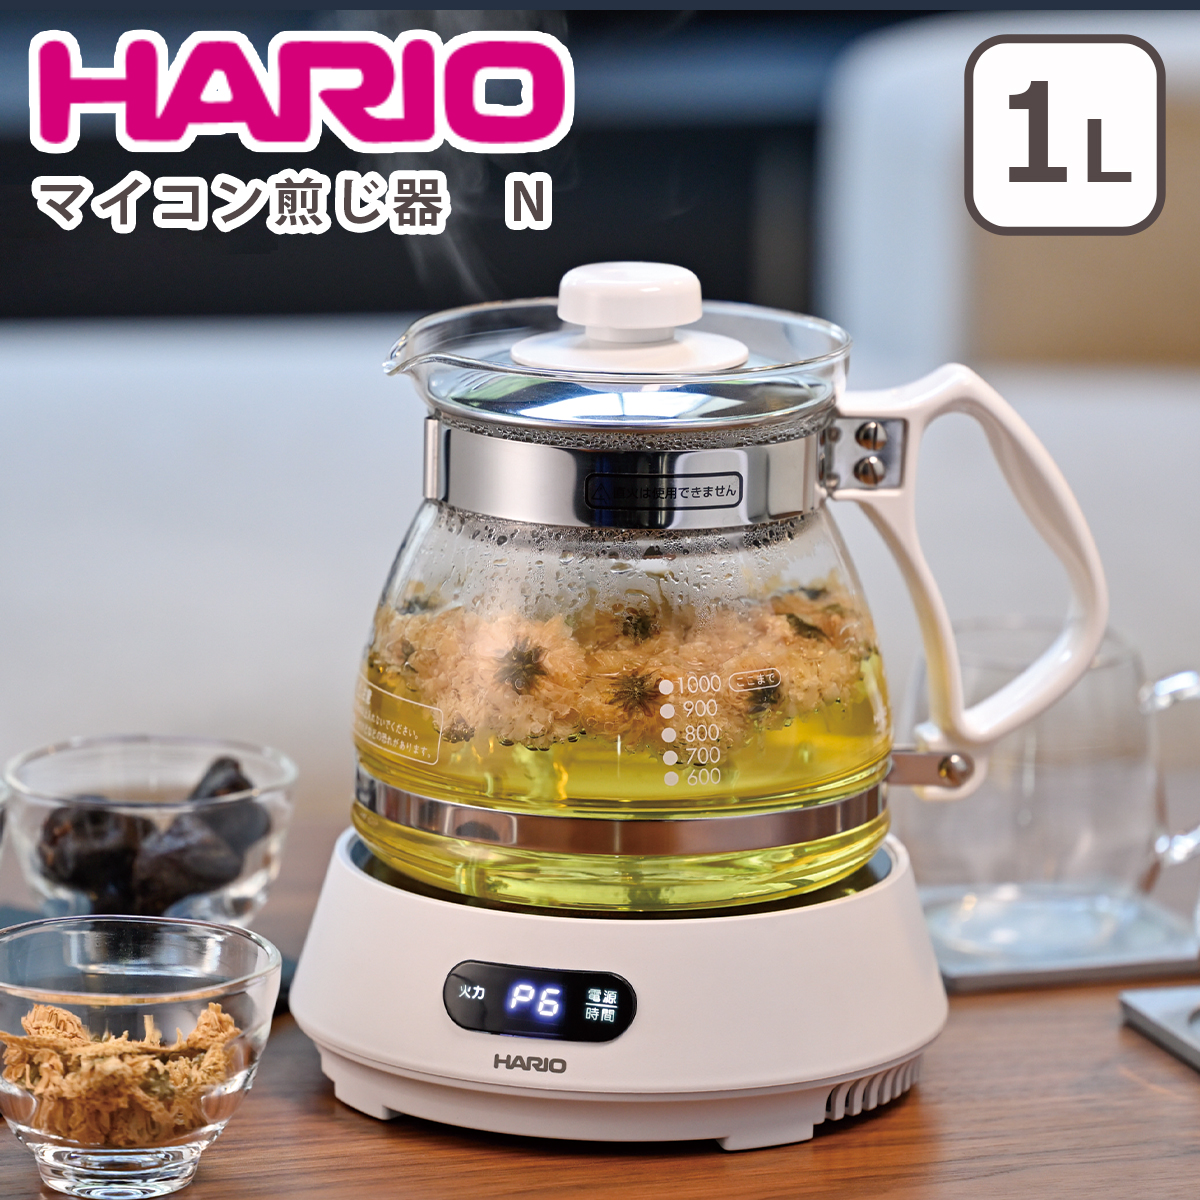 ハリオ マイコン煎じ器 N HMJN-1000-W 電気式煎じ器 1,000ml 1L キッチン家電 HARIO